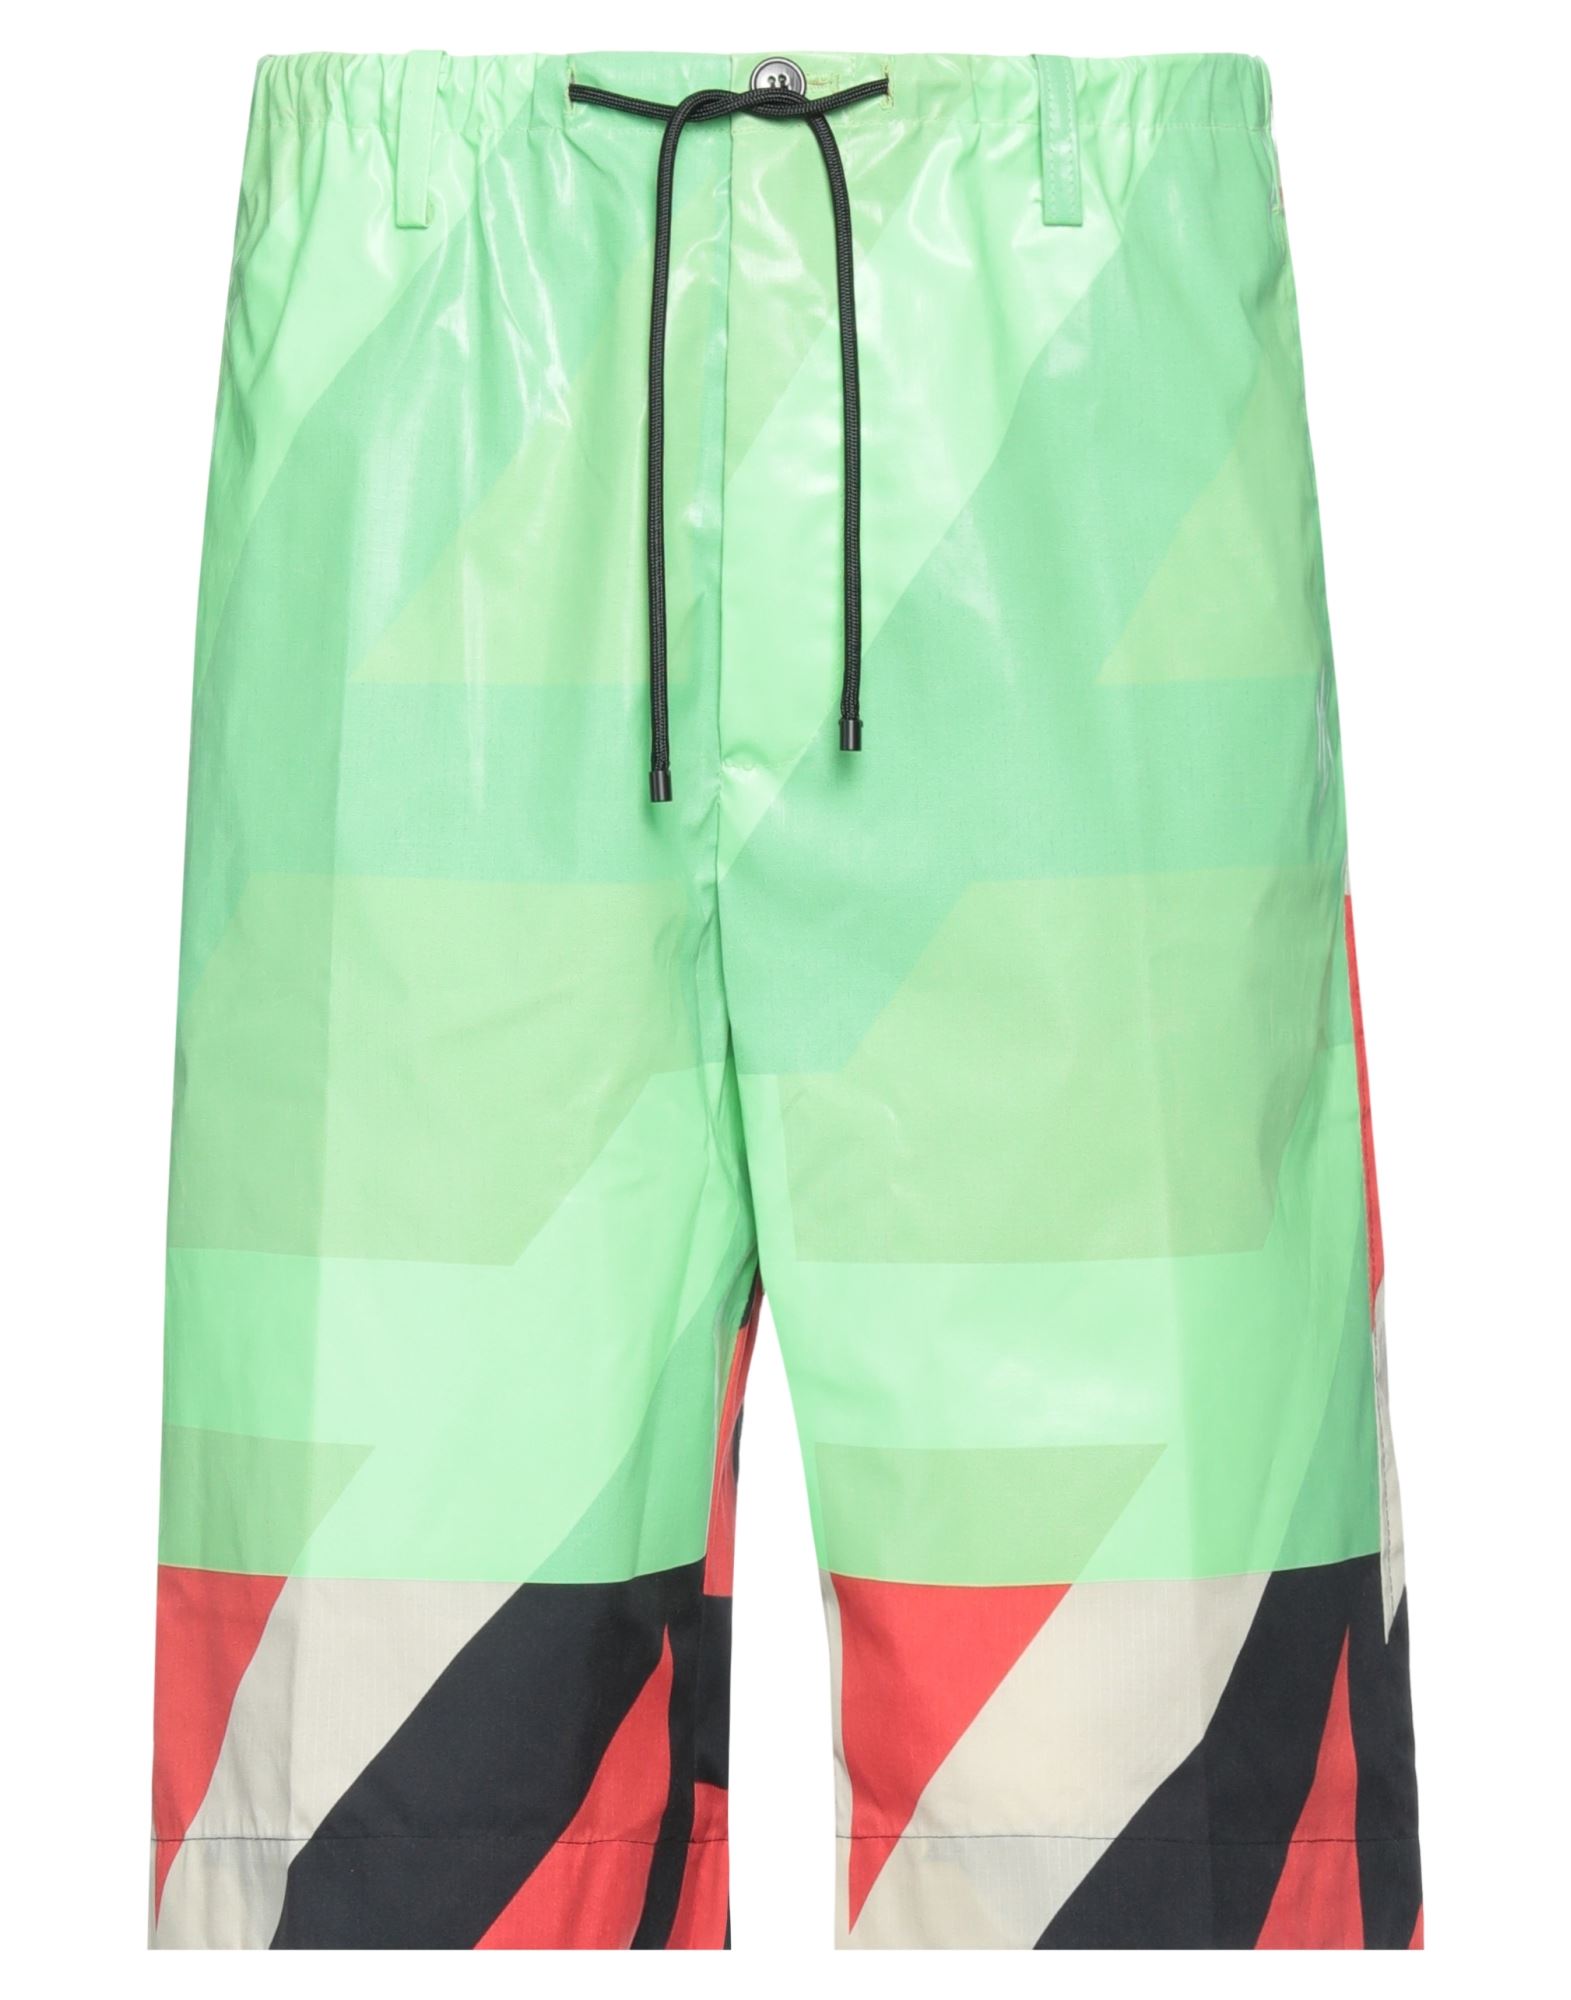 Dries Van Noten Man Shorts & Bermuda Shorts Light Green Size 34 Polyamide